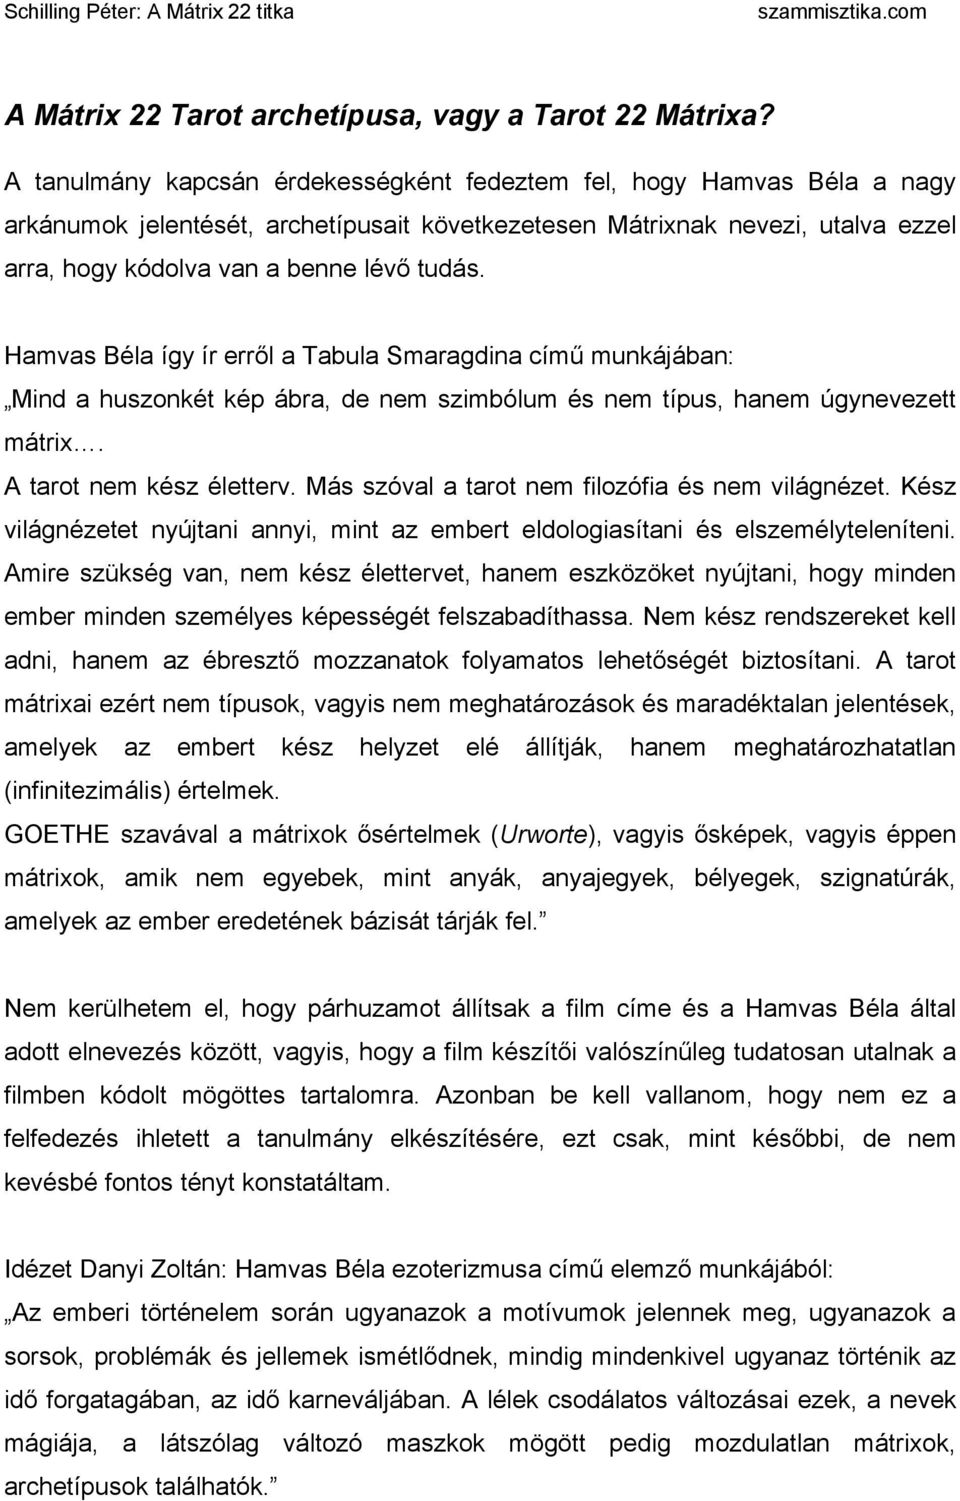 Hamvas Béla így ír erről a Tabula Smaragdina című munkájában: Mind a huszonkét kép ábra, de nem szimbólum és nem típus, hanem úgynevezett mátrix. A tarot nem kész életterv.